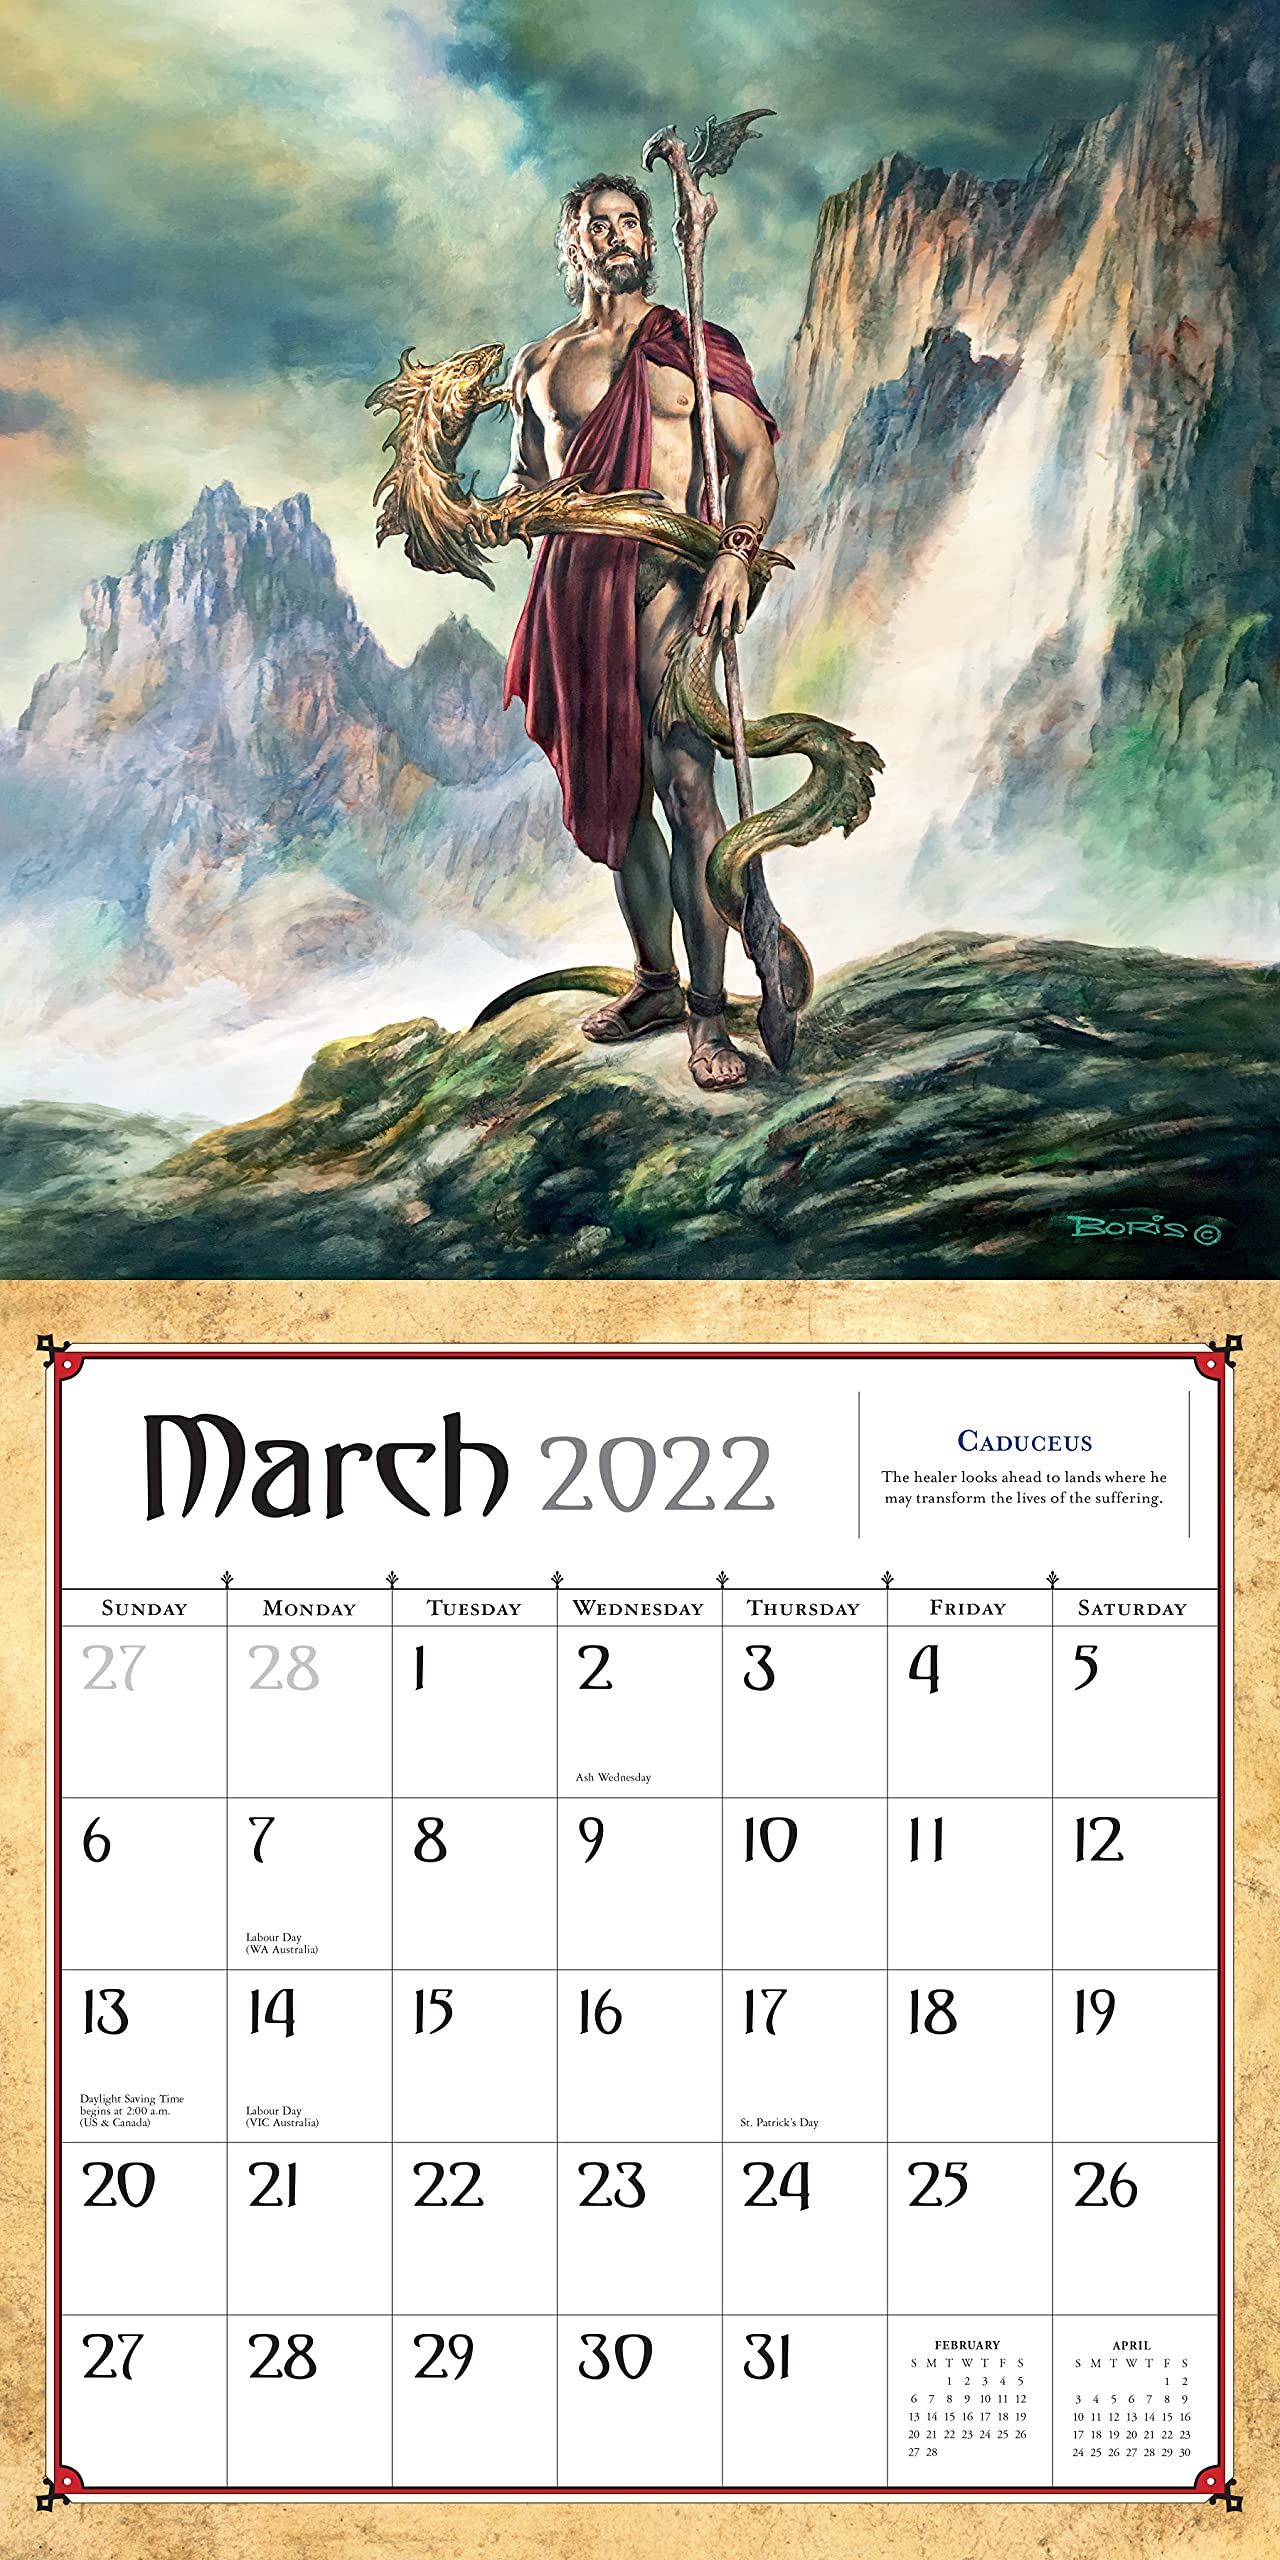 Boris Vallejo & Julie Bell's Fantasy Wall Calendar 2022